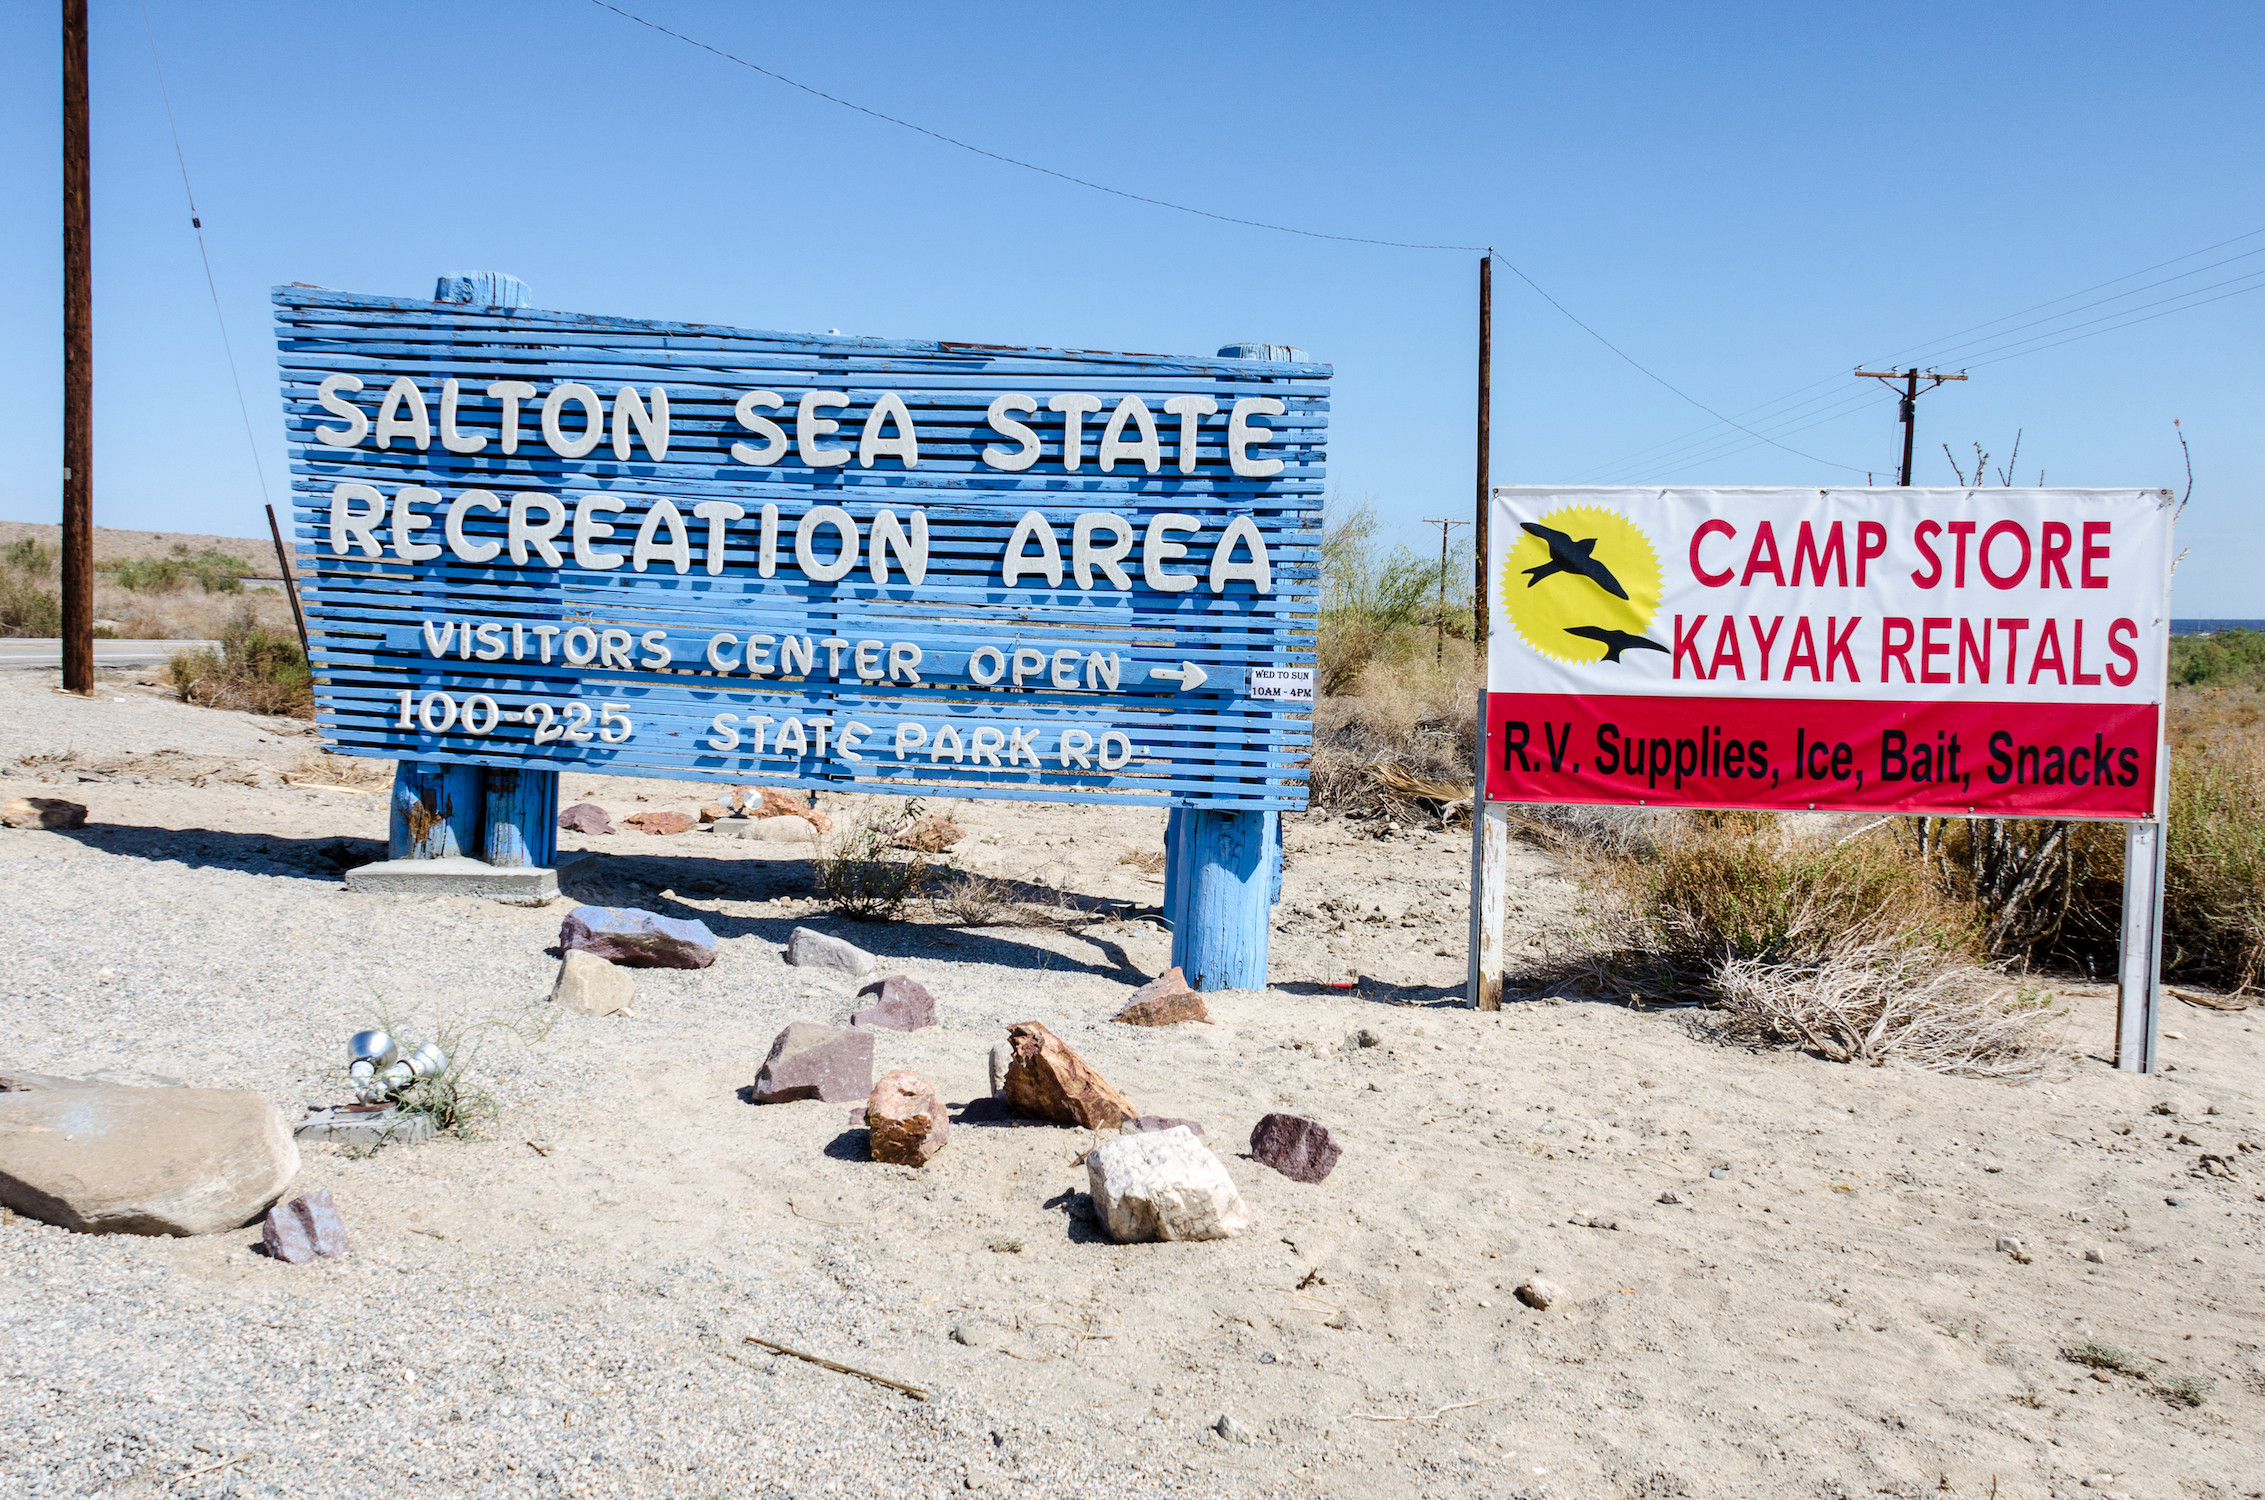 Visite el Mar de Salton, donde el agua es peligrosa, pero el senderismo es excelente - 541